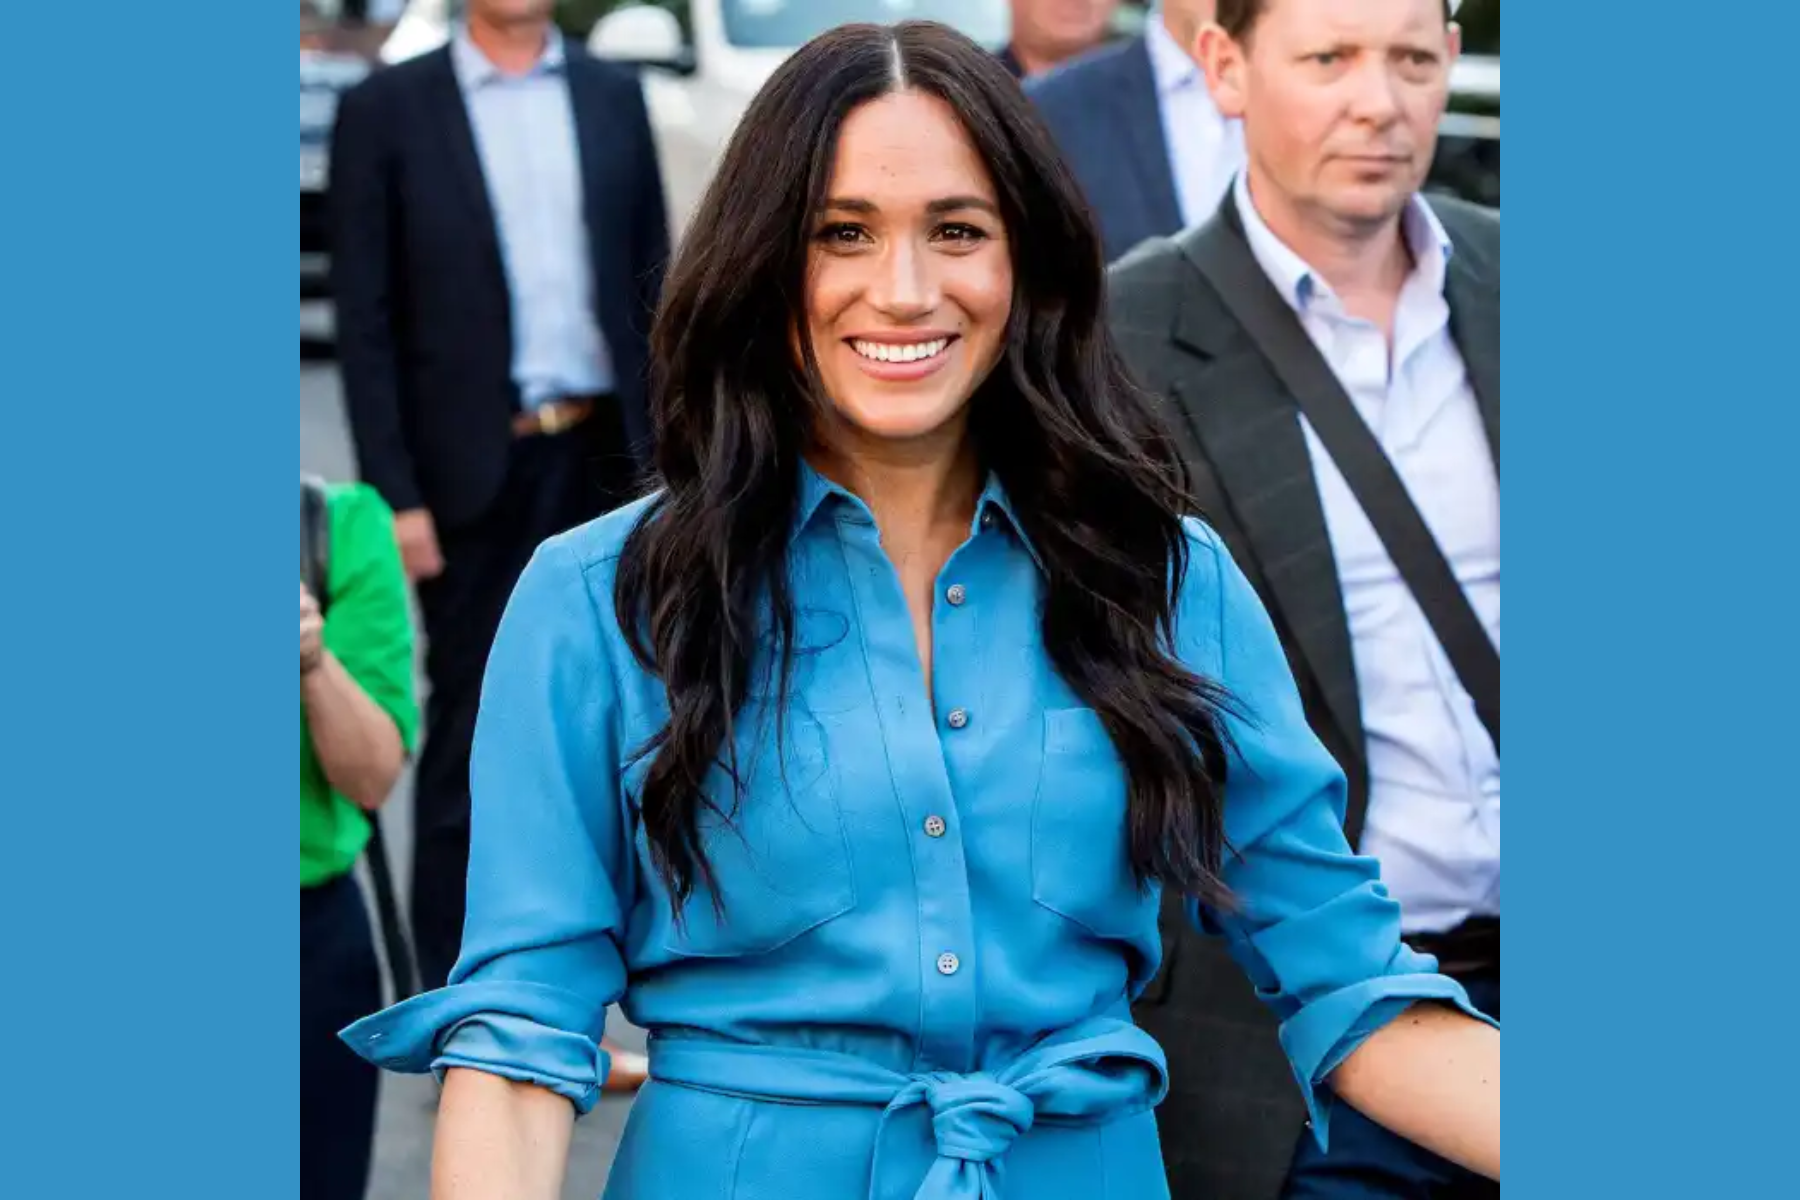 Meghan Markle, dressed in blue, smiles as she walks in public